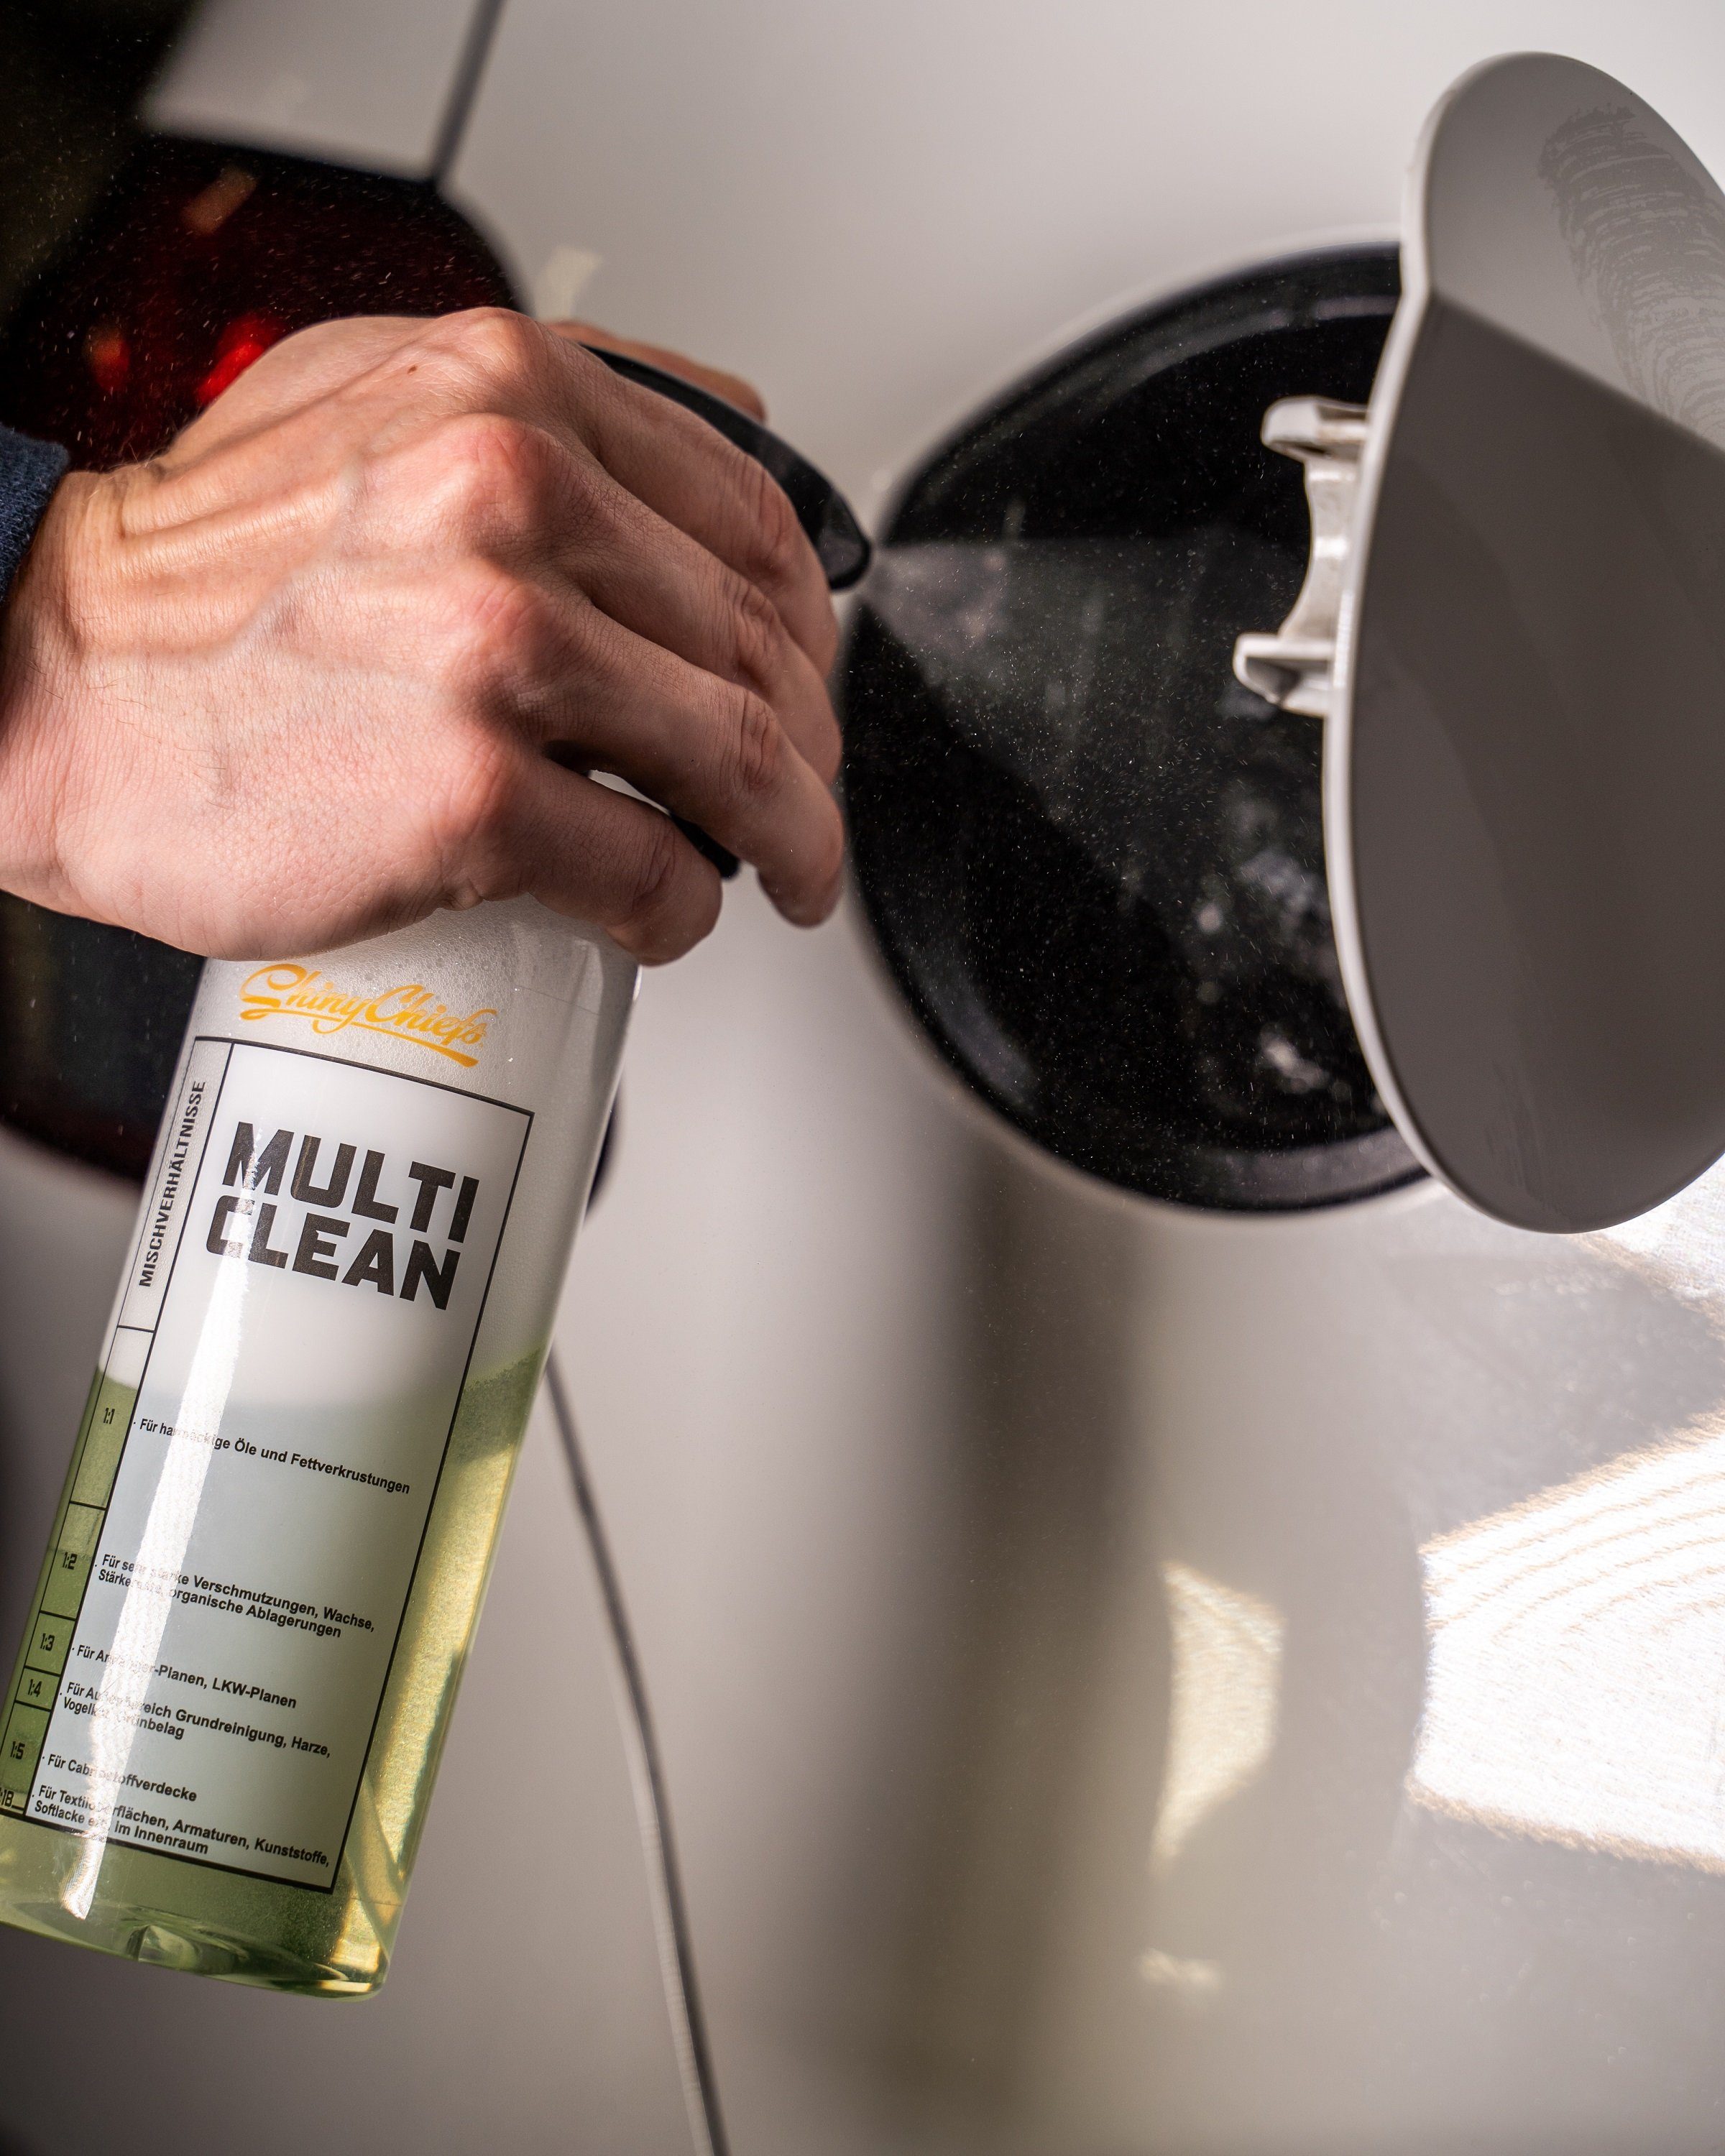 ShinyChiefs Mischverhältnisflasche 500ml Autoshampoo CLEAN UNIVERSALREINIGER SET mit MULTI